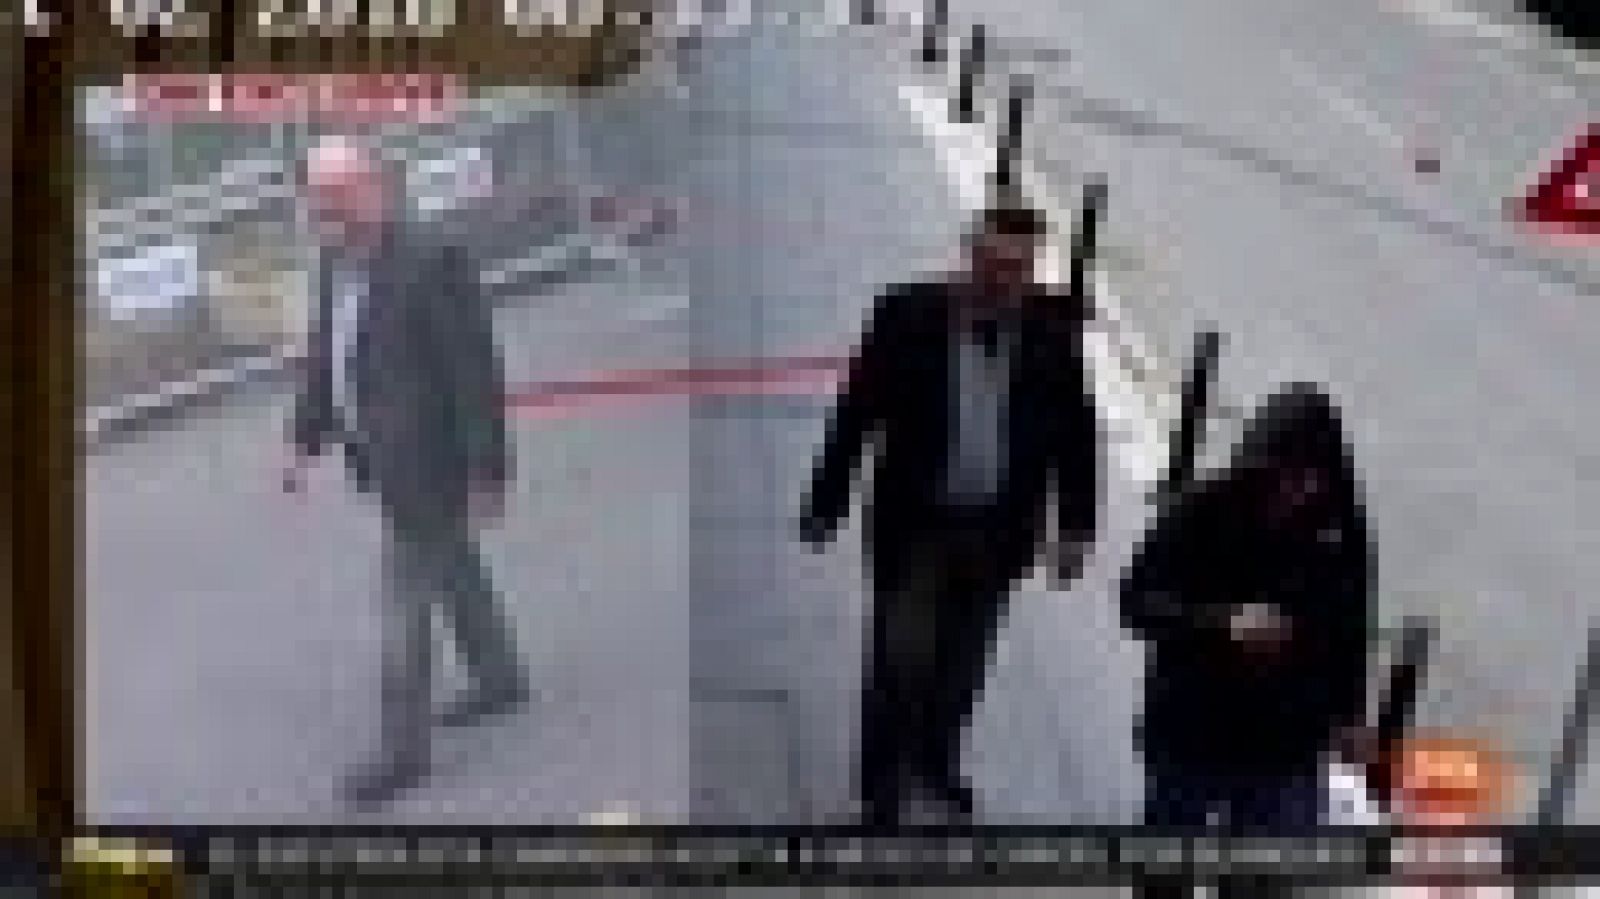 Un agente saudí salió del consulado disfrazado de Khashoggi